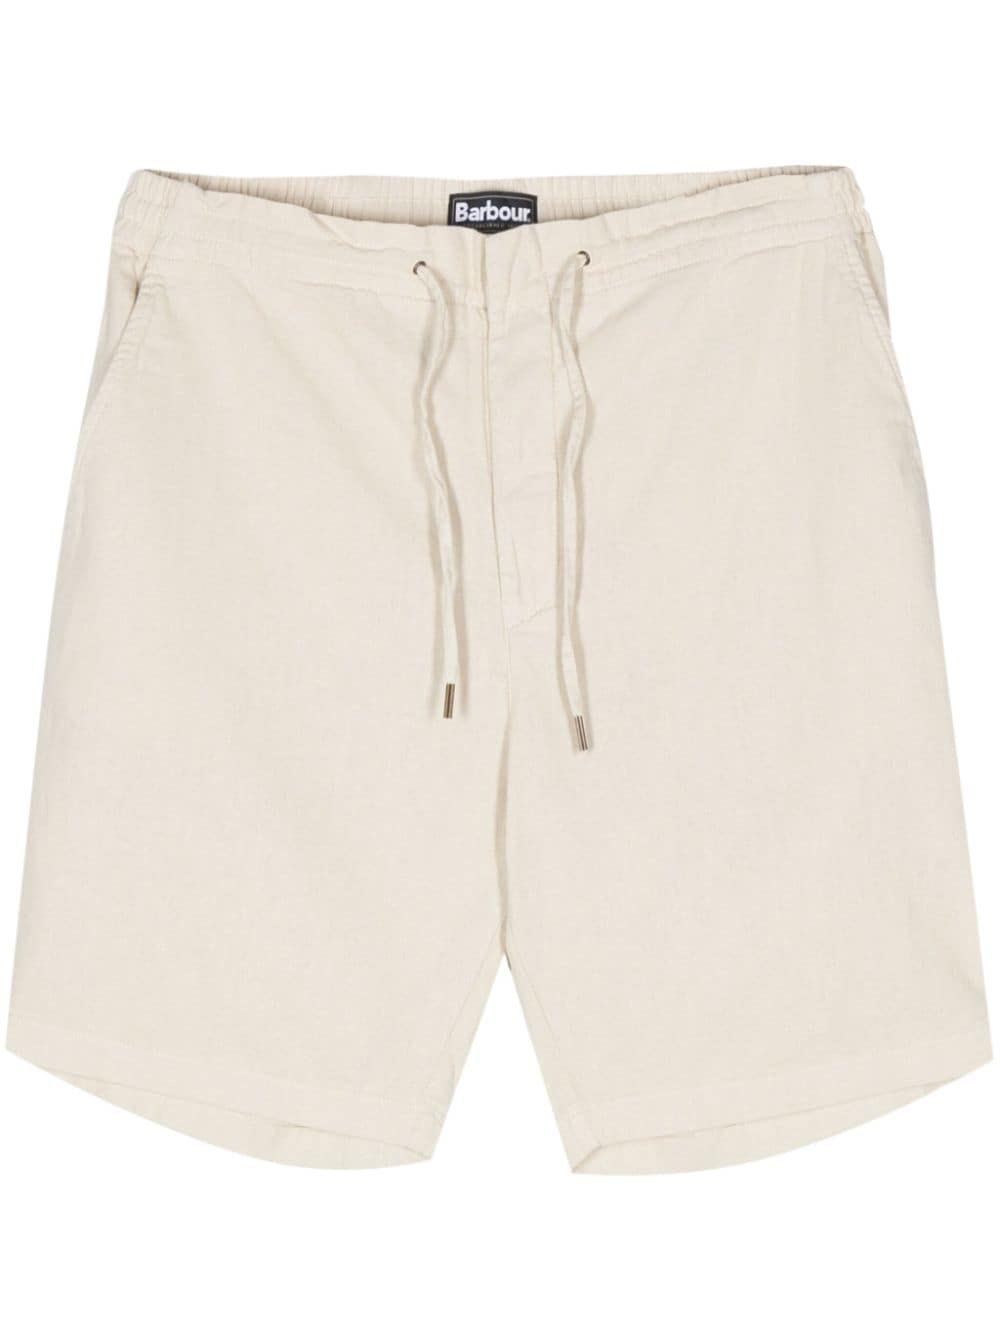 Barbour textured bermuda shorts - Neutrals von Barbour